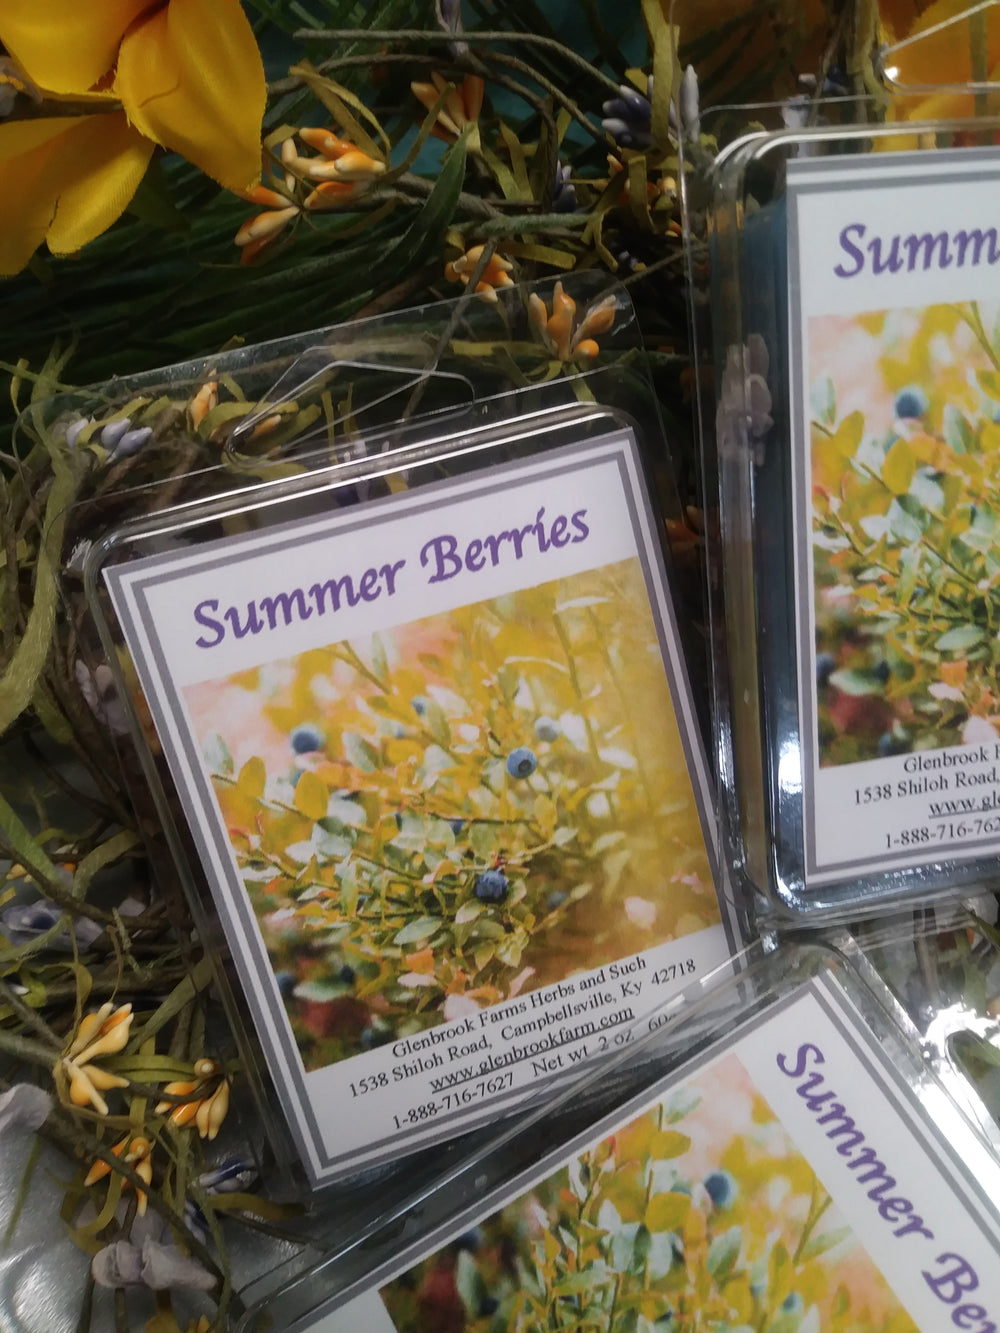 Summer Berries Wax Melts.